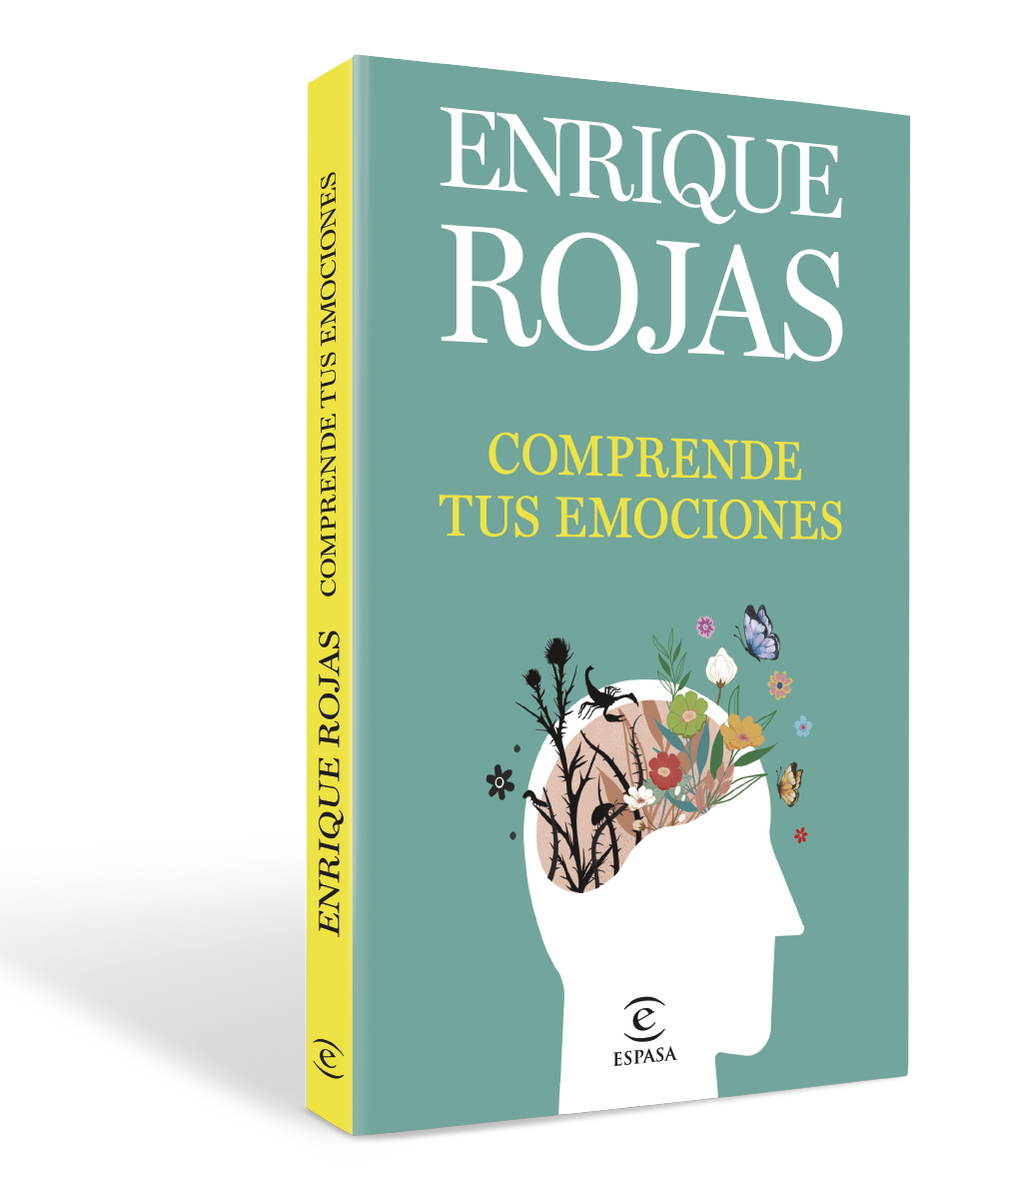 Comprende tus emociones, de Enrique Rojas